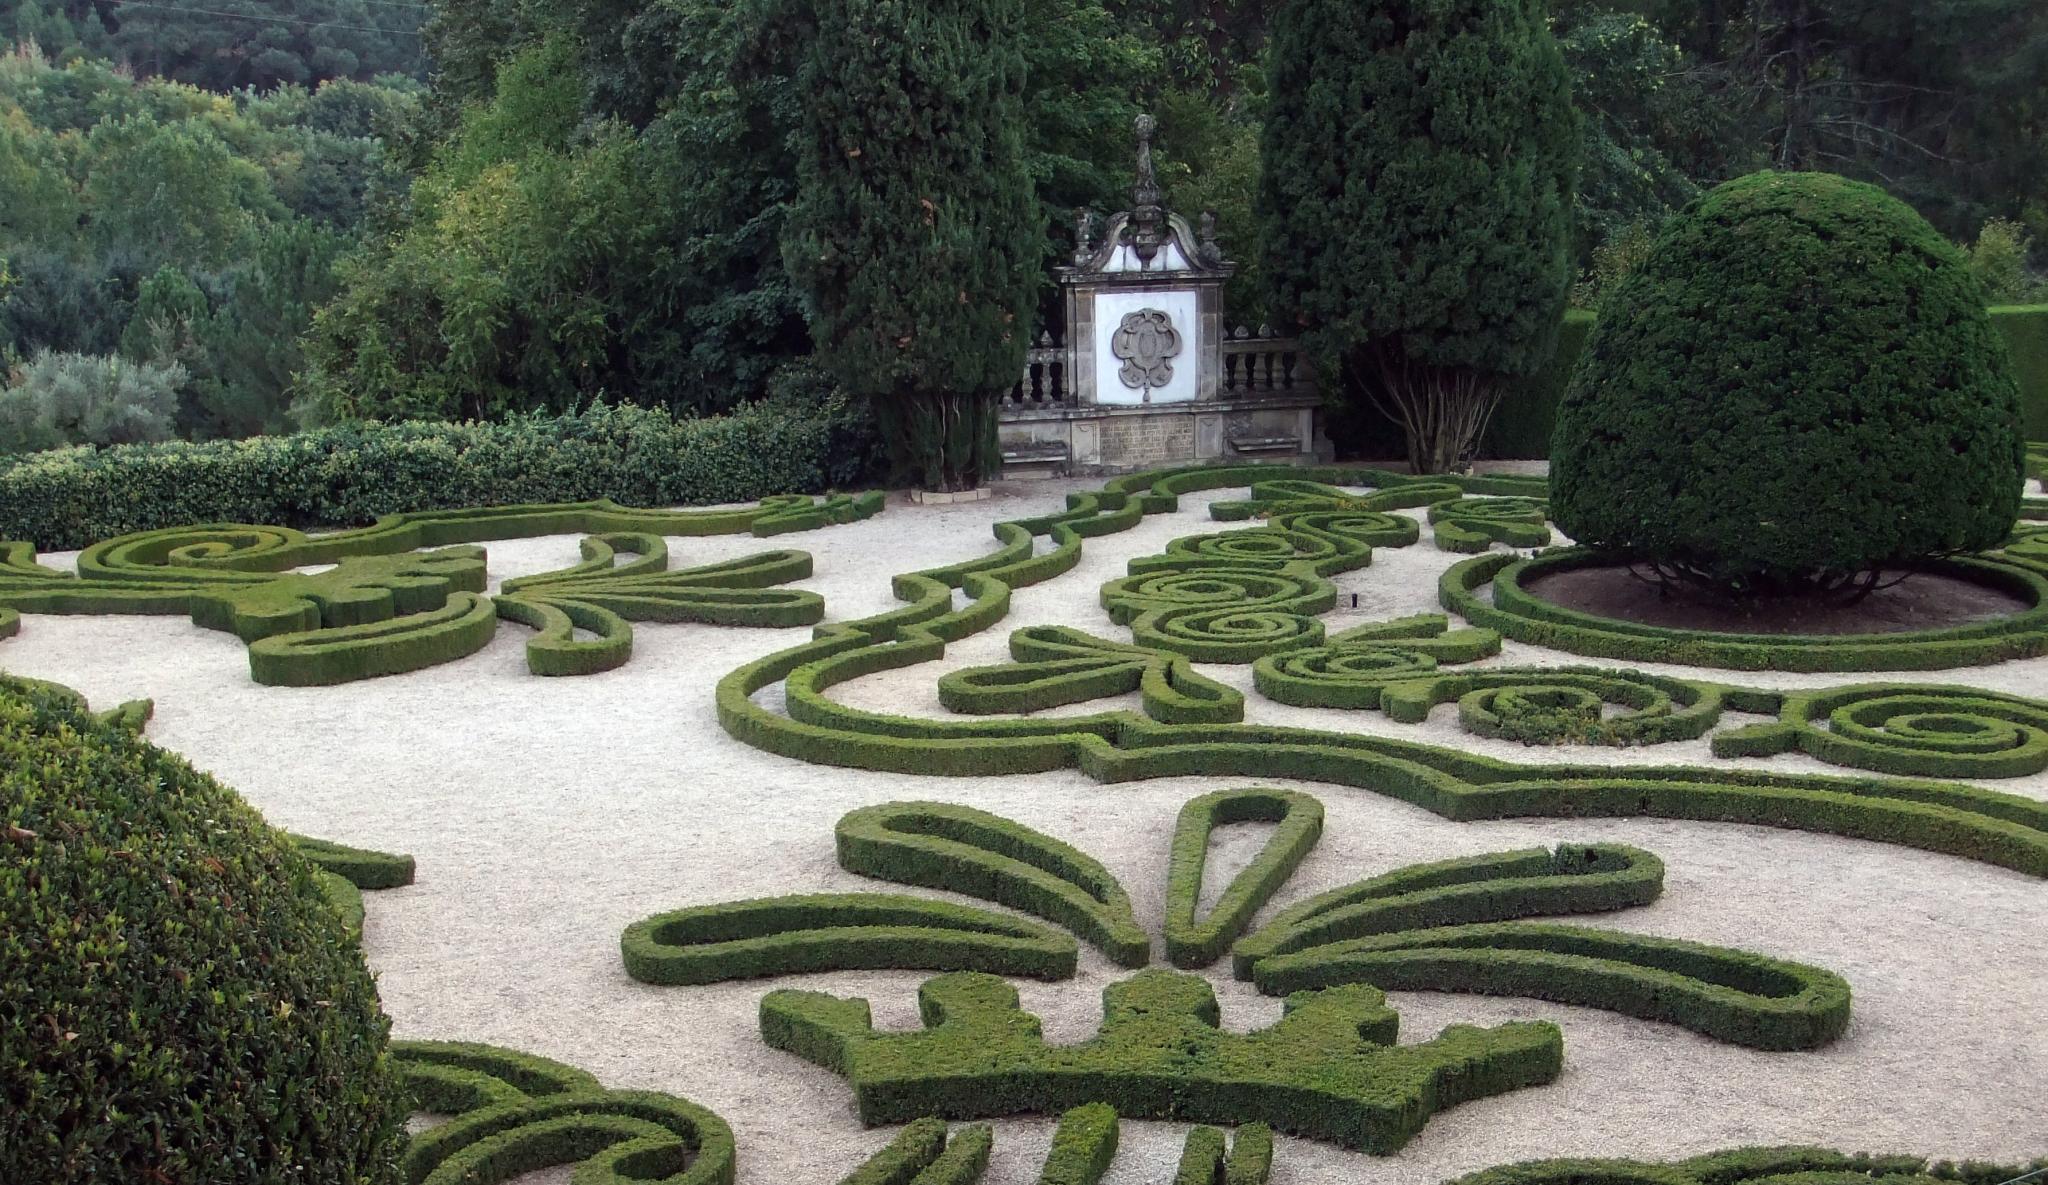 an elaborate garden that looks like a spiral maze